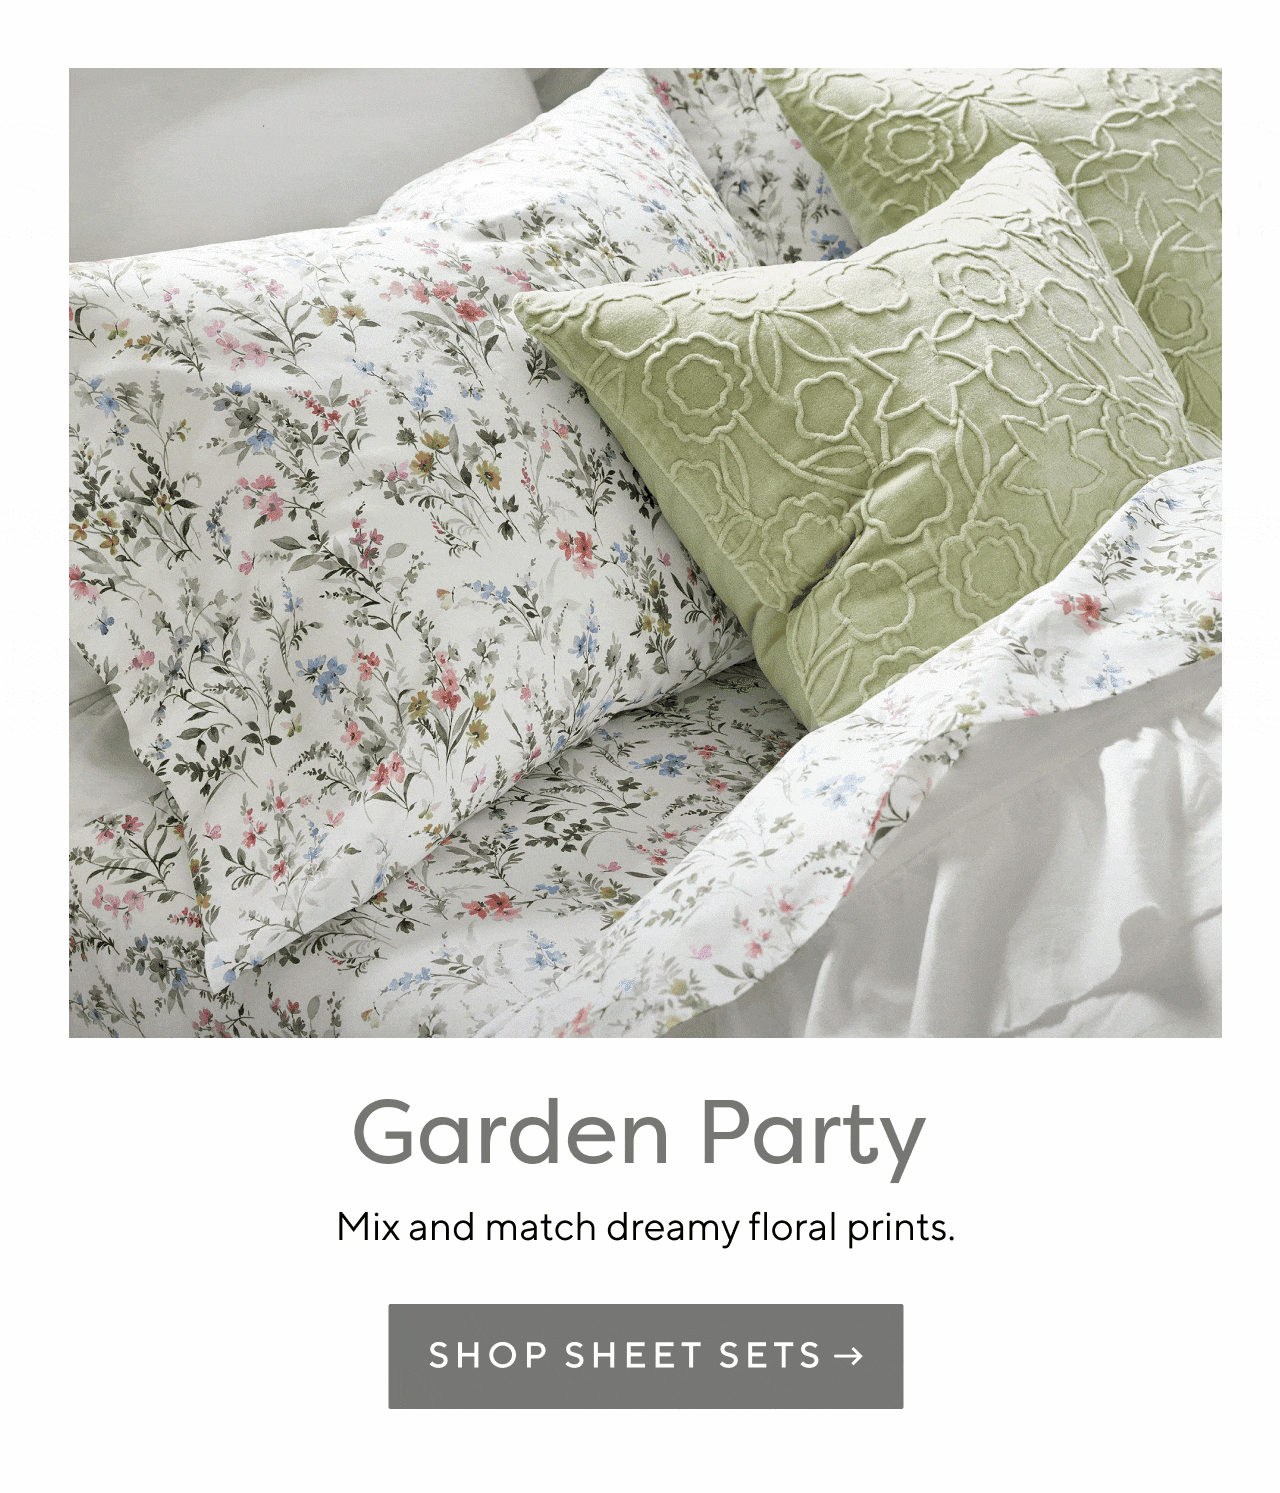 Garden Party. Shop Sheet Sets